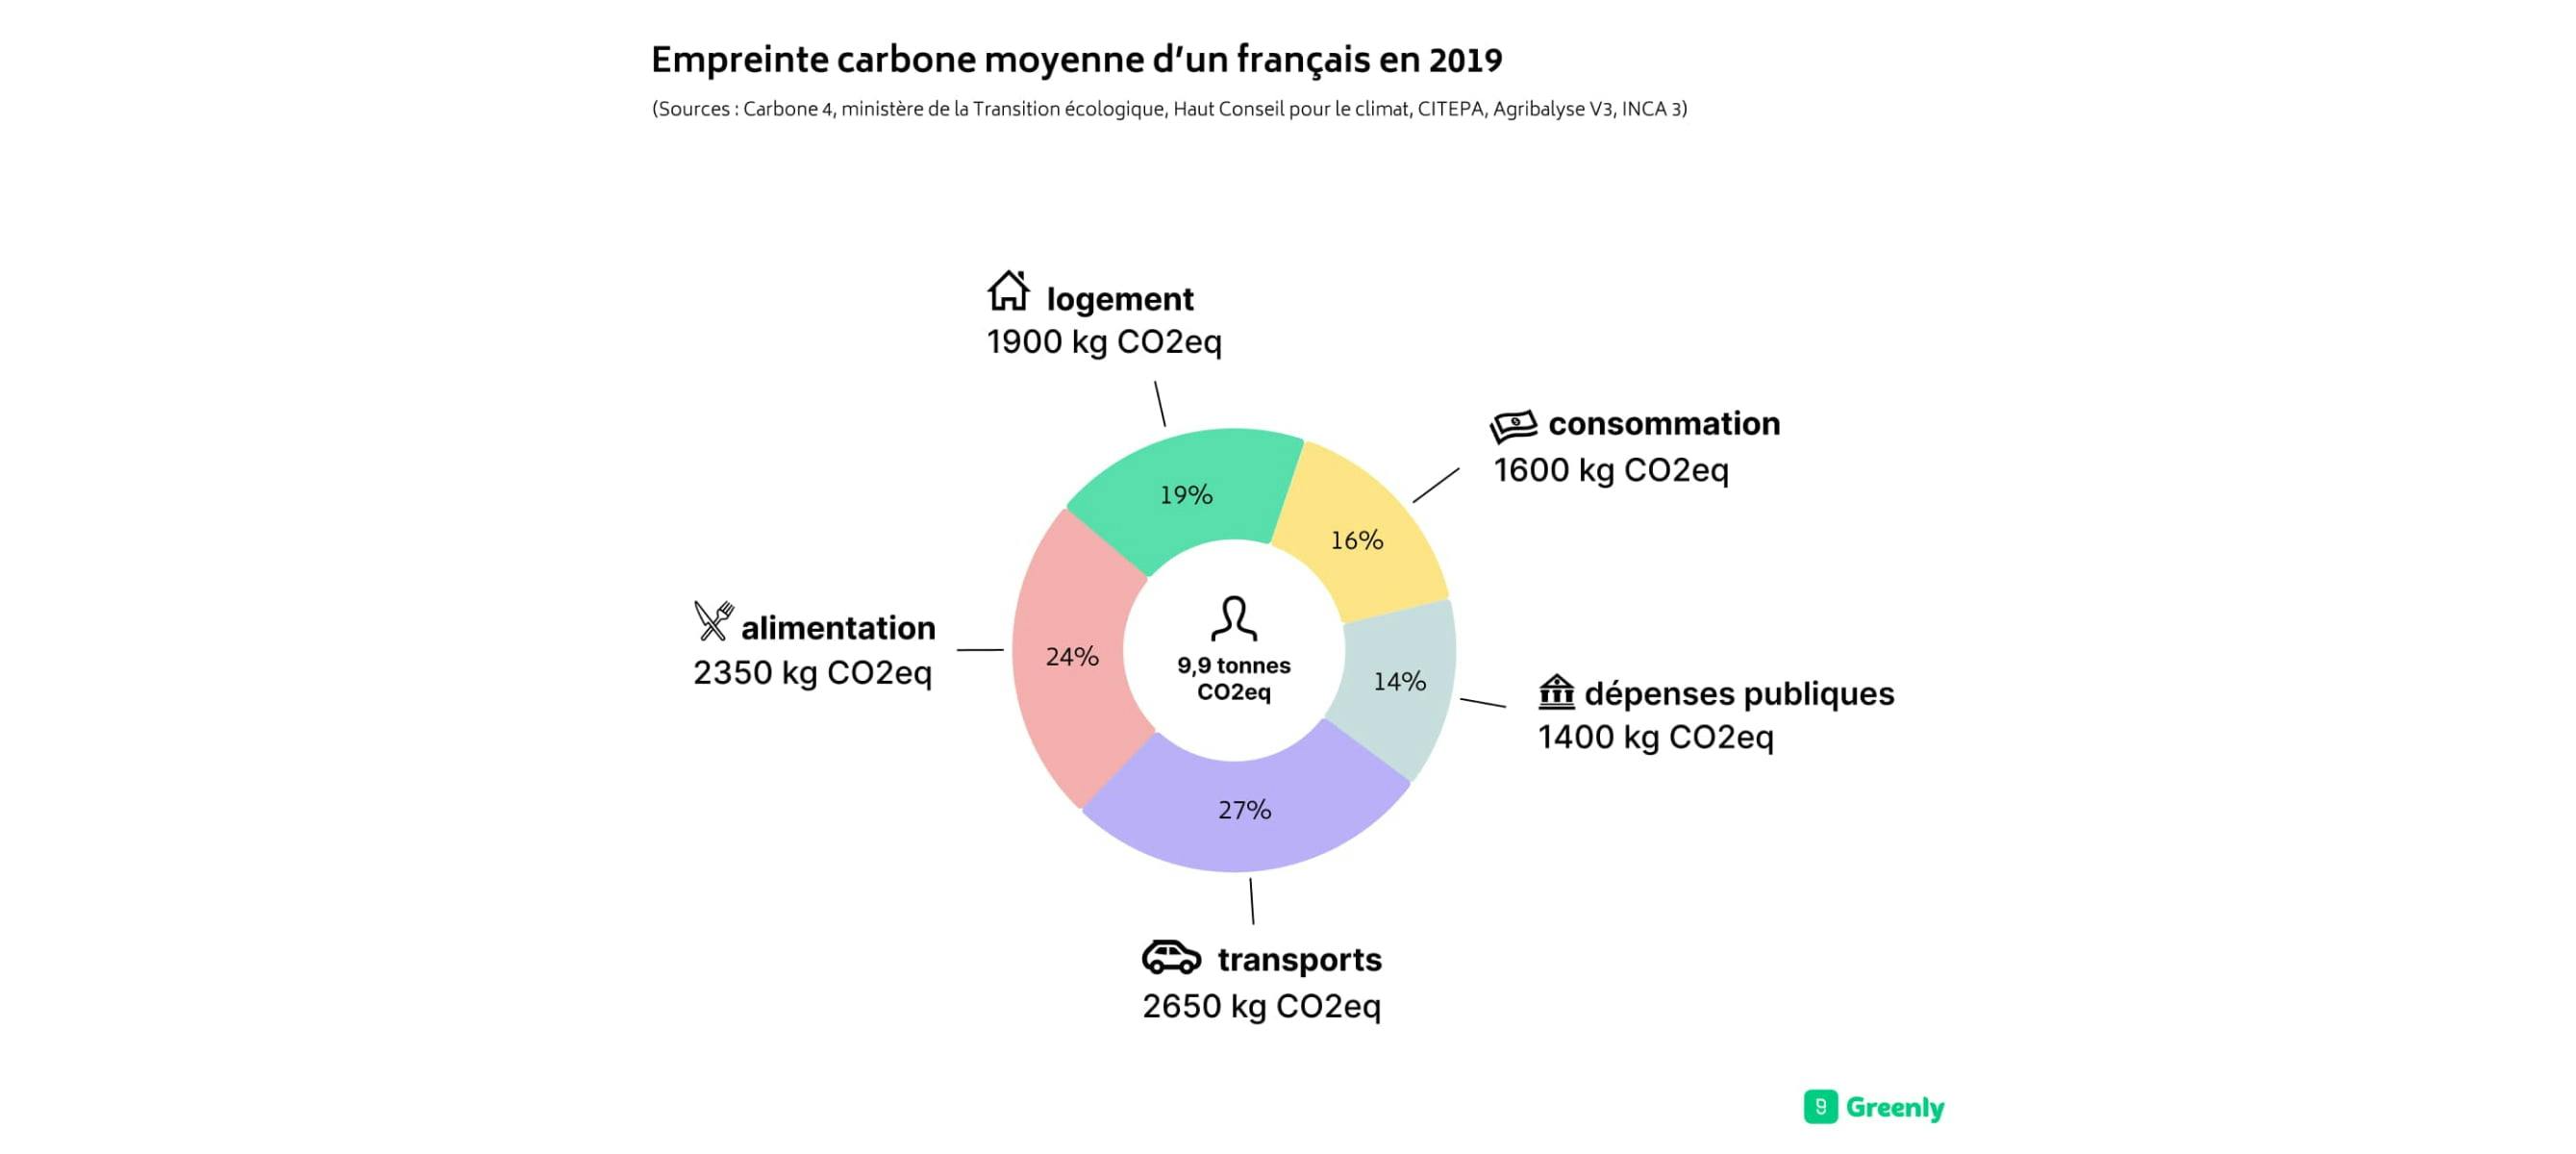 Graphique empreinte carbone moyenne d'un français